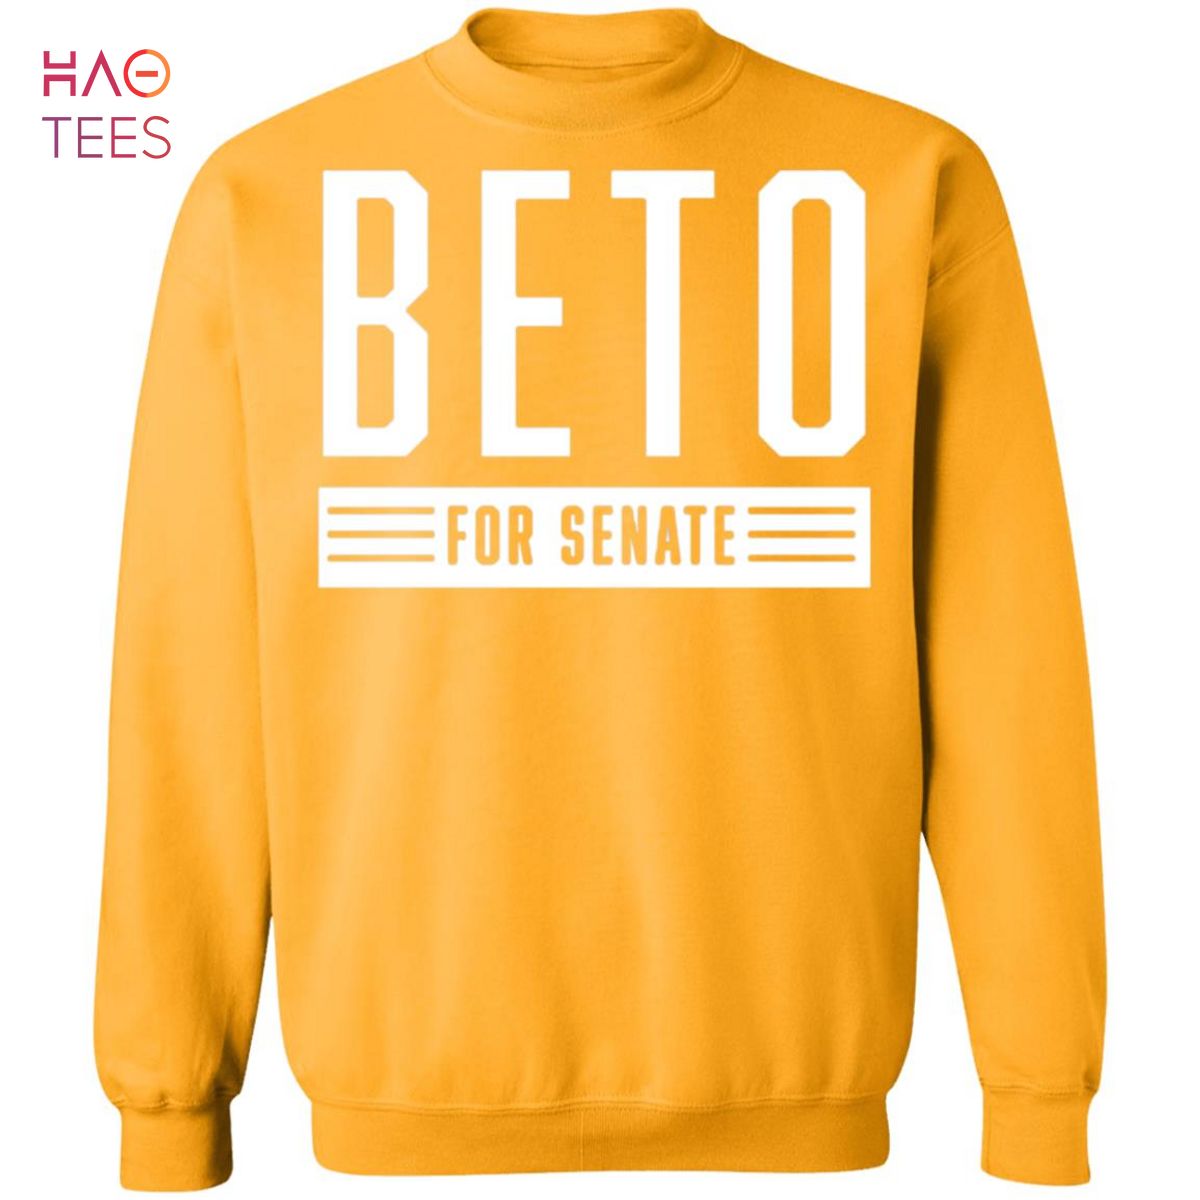 BEST Beto For Senate Sweater